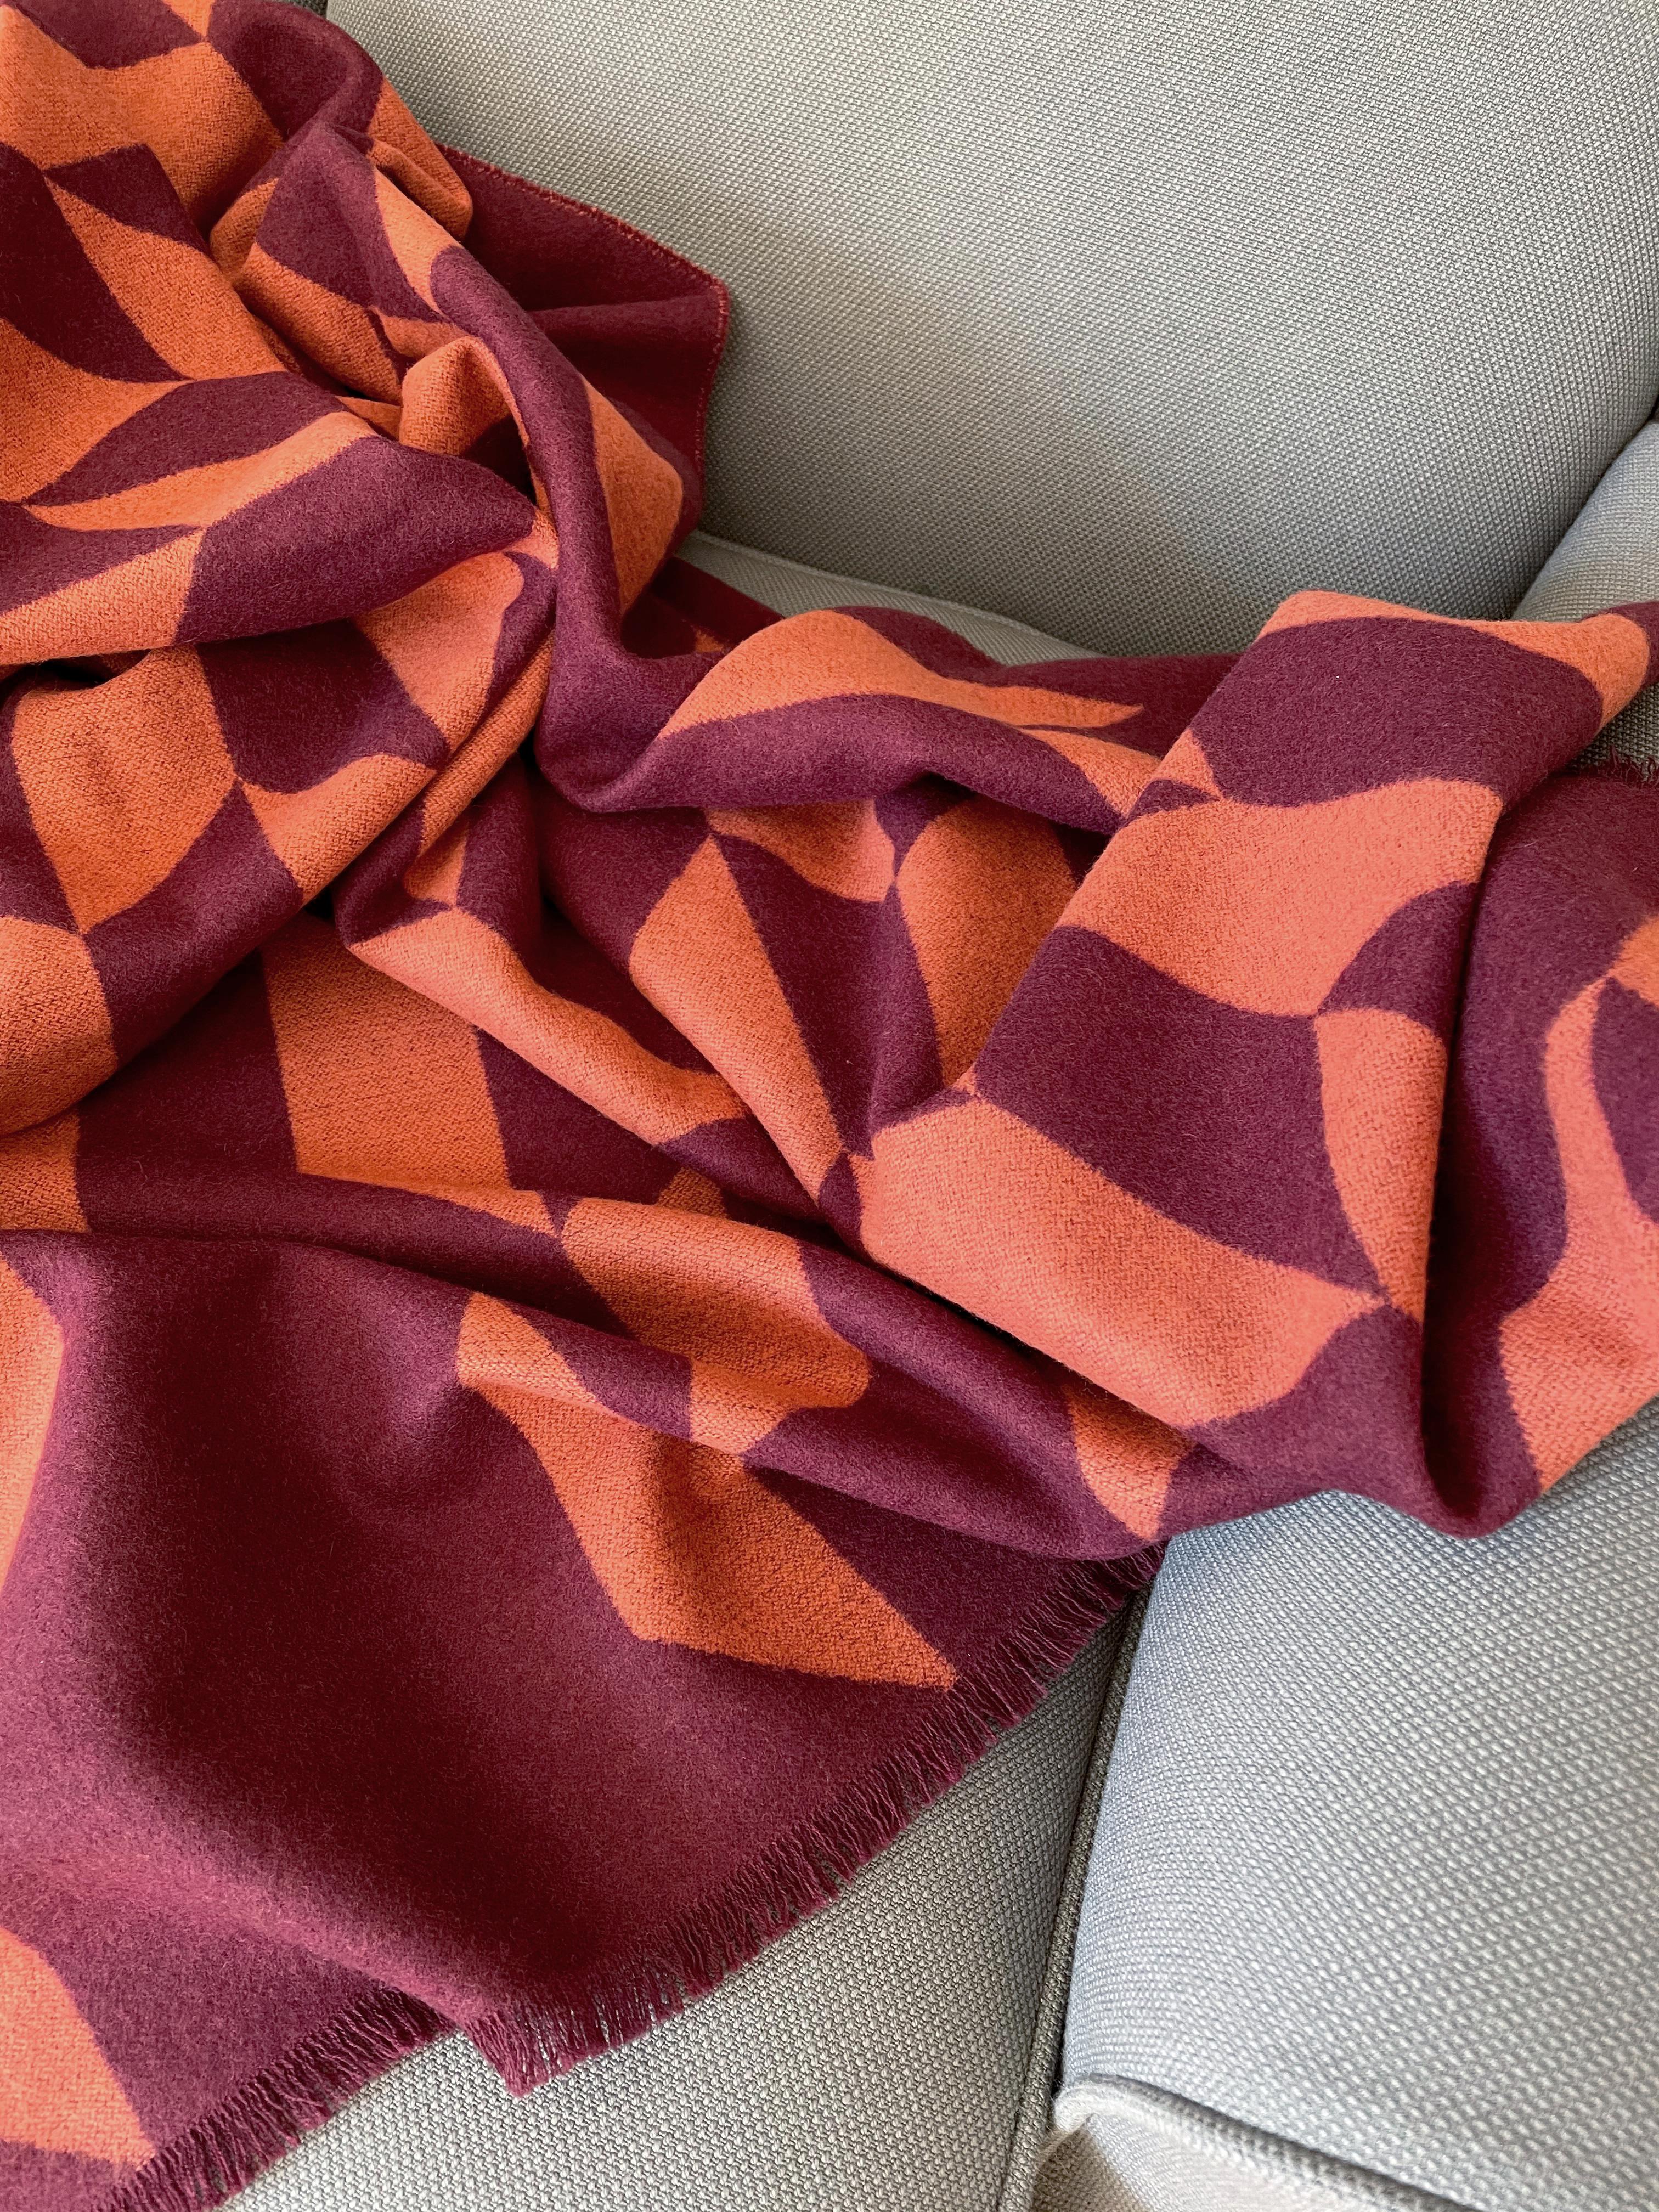 Entworfen in Berlin von Catharina Mende, gewebt aus 100% extrafeiner Merino in Schottland: Diese luxuriöse und schmeichelhafte Decke ist die perfekte Kombination aus Farbe, Form und Material für jede Tages- und Jahreszeit. Dieses exquisite Stück